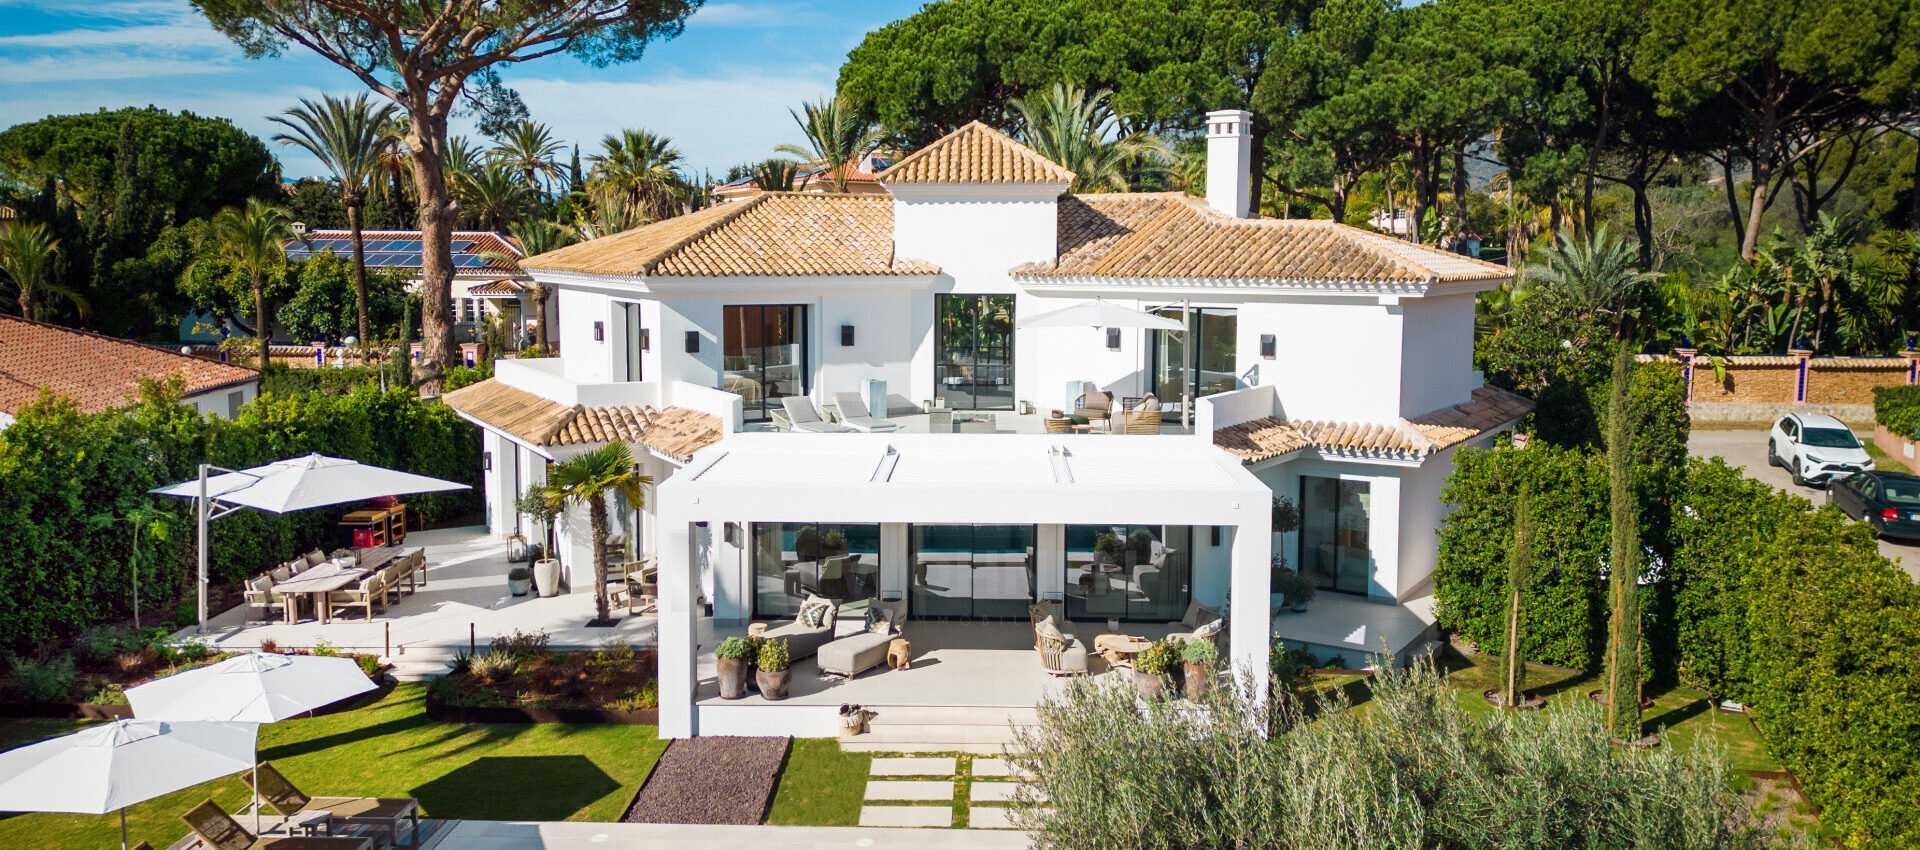 Villa de estilo andaluz ubicada a solo 300m de la playa en Reserva de Los Monteros